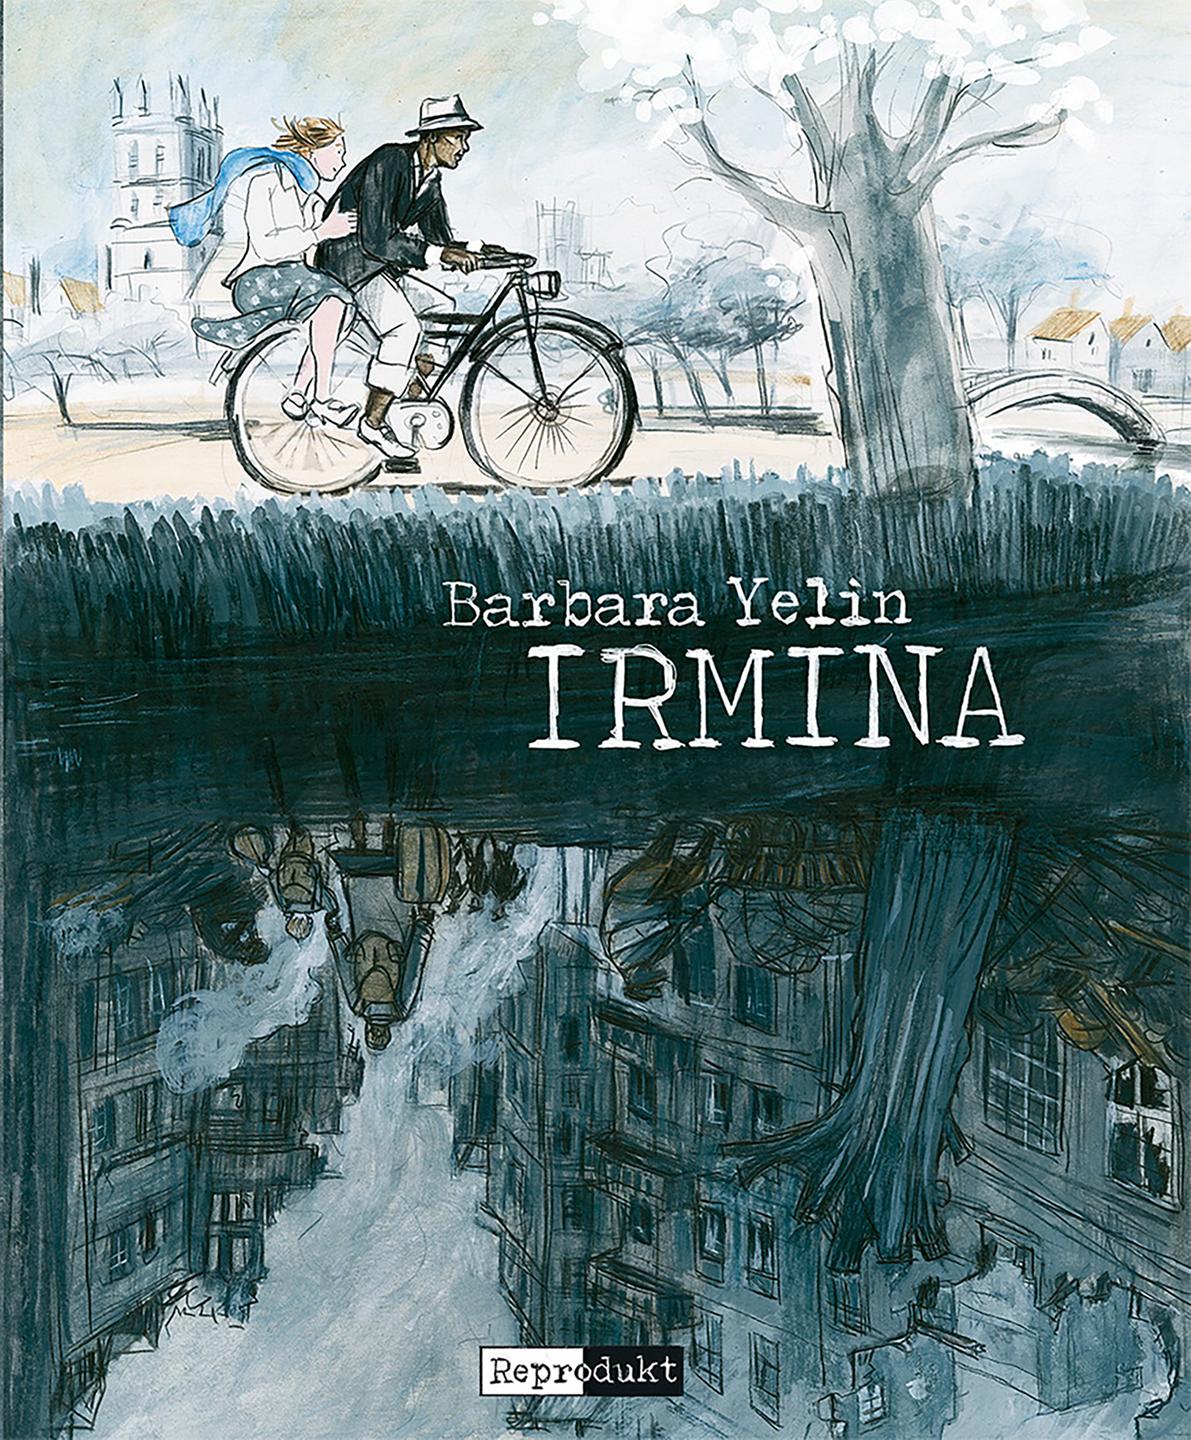 Das Buchcover von der Graphic Novel "Irmina" von Barbara Yelin.